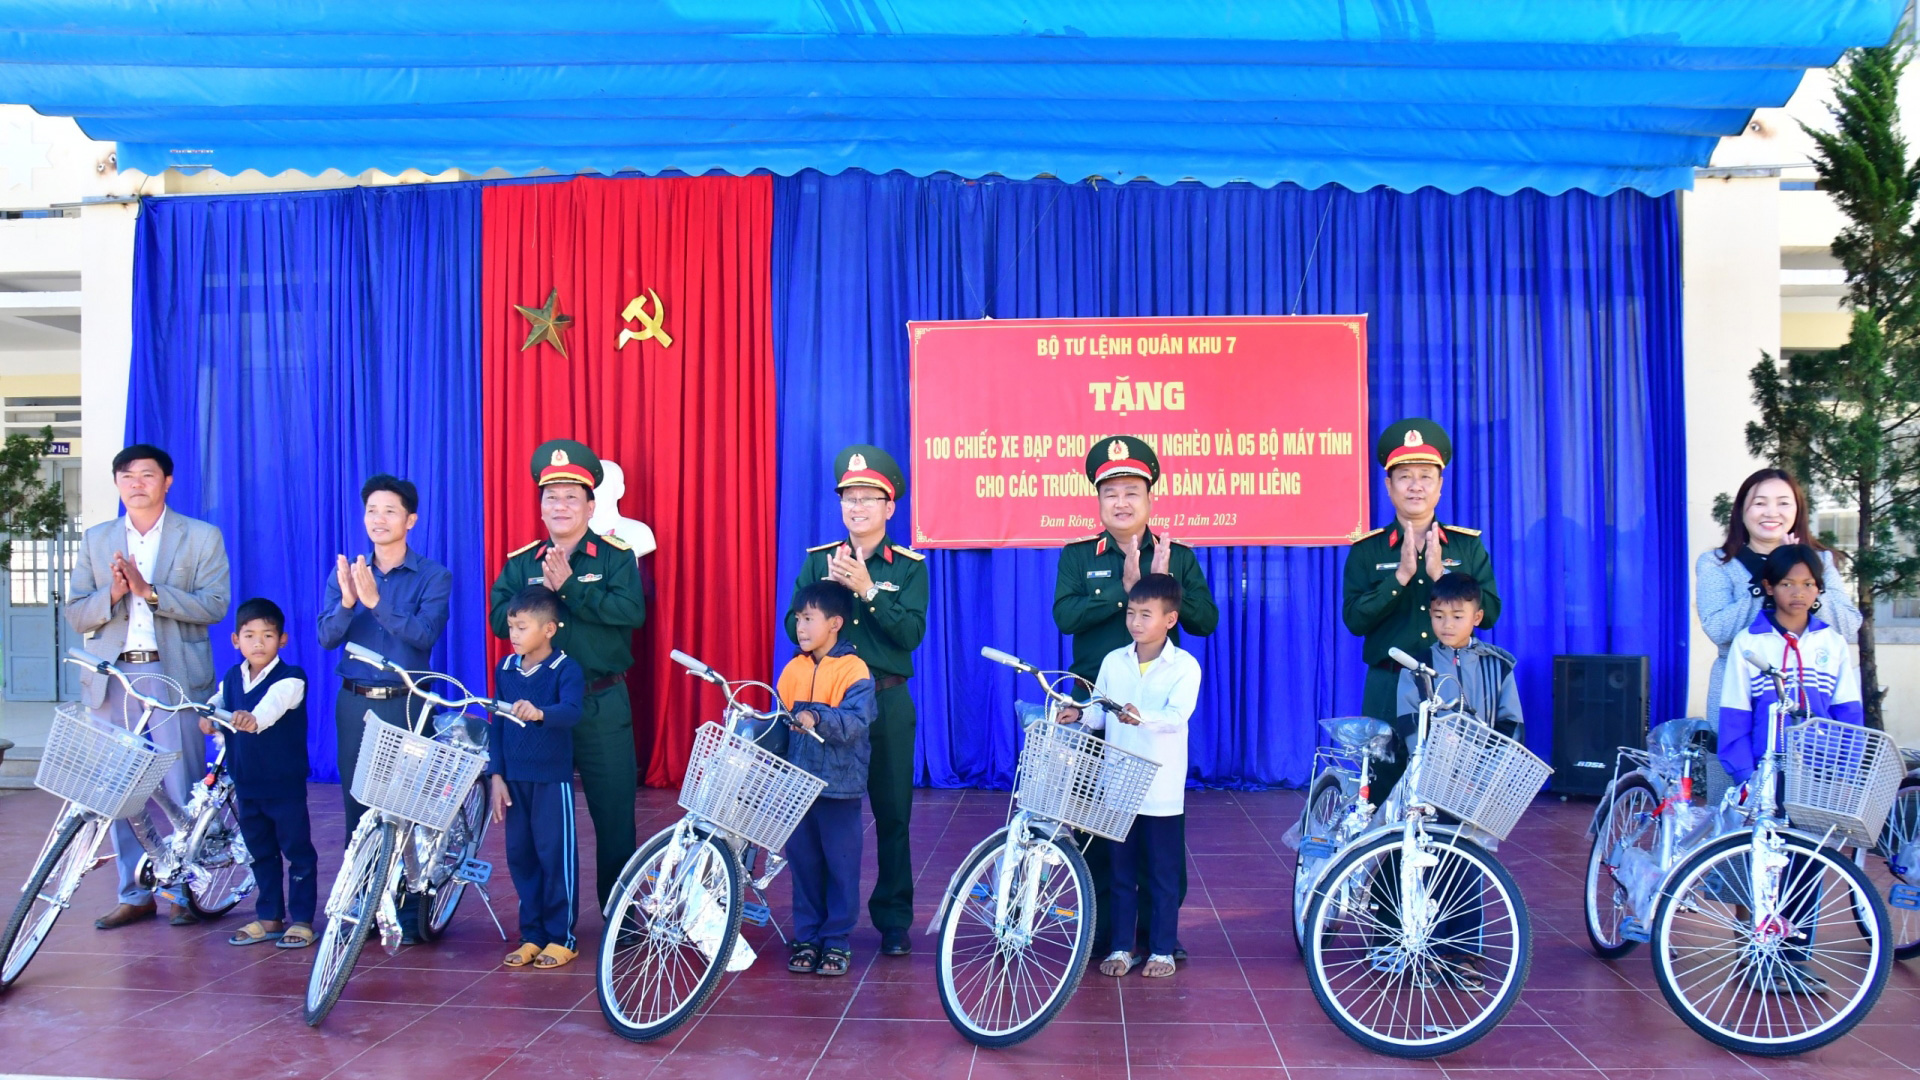 Quân khu 7 tặng 100 xe đạp cho học sinh khó khăn ở xã Phi Liêng